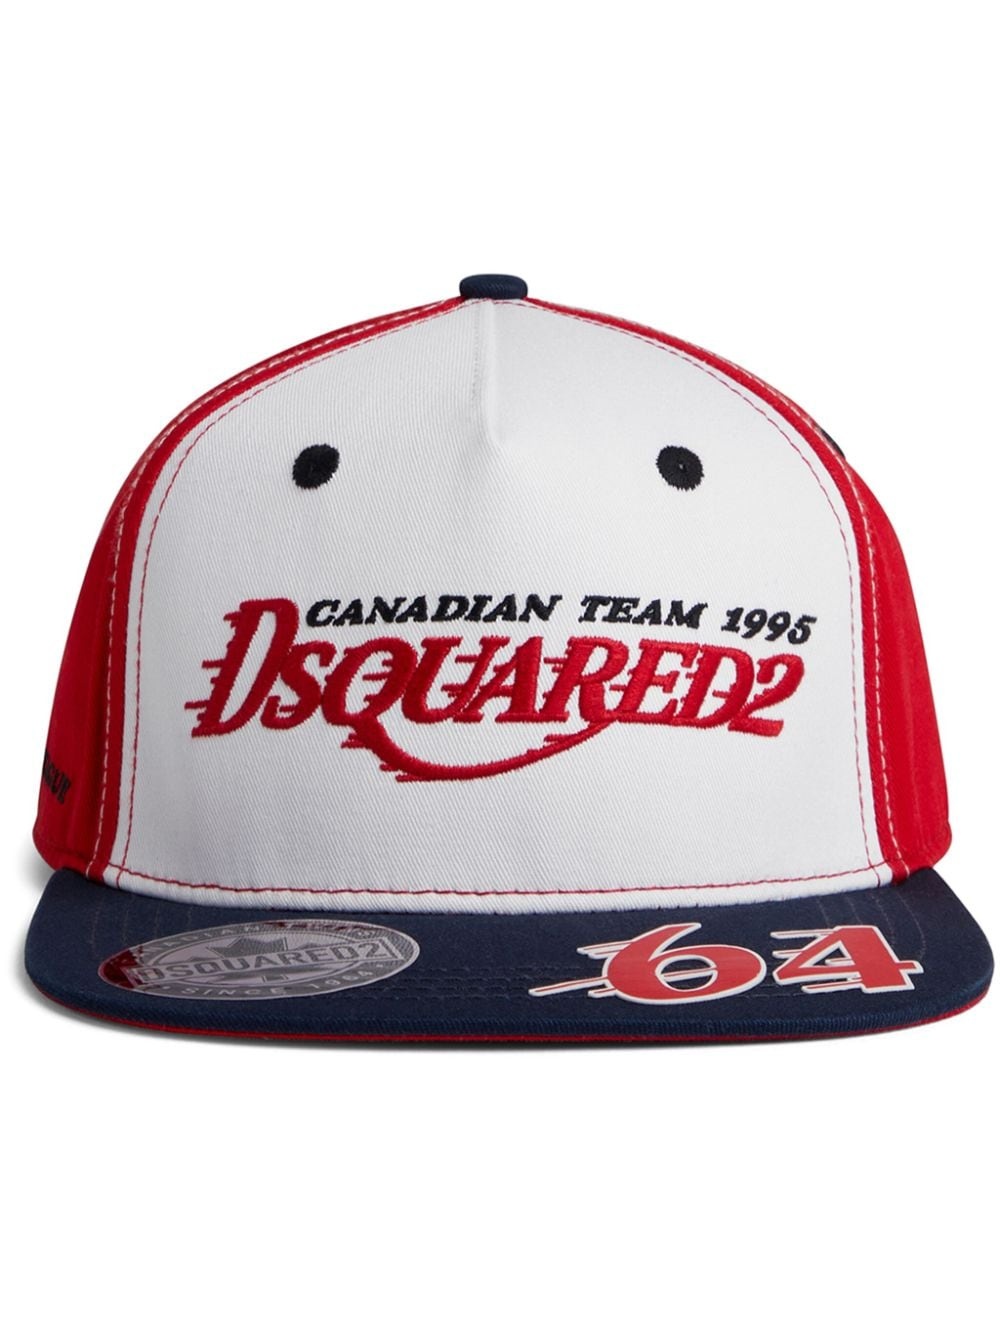 logo-embroidered cotton baseball cap - 1